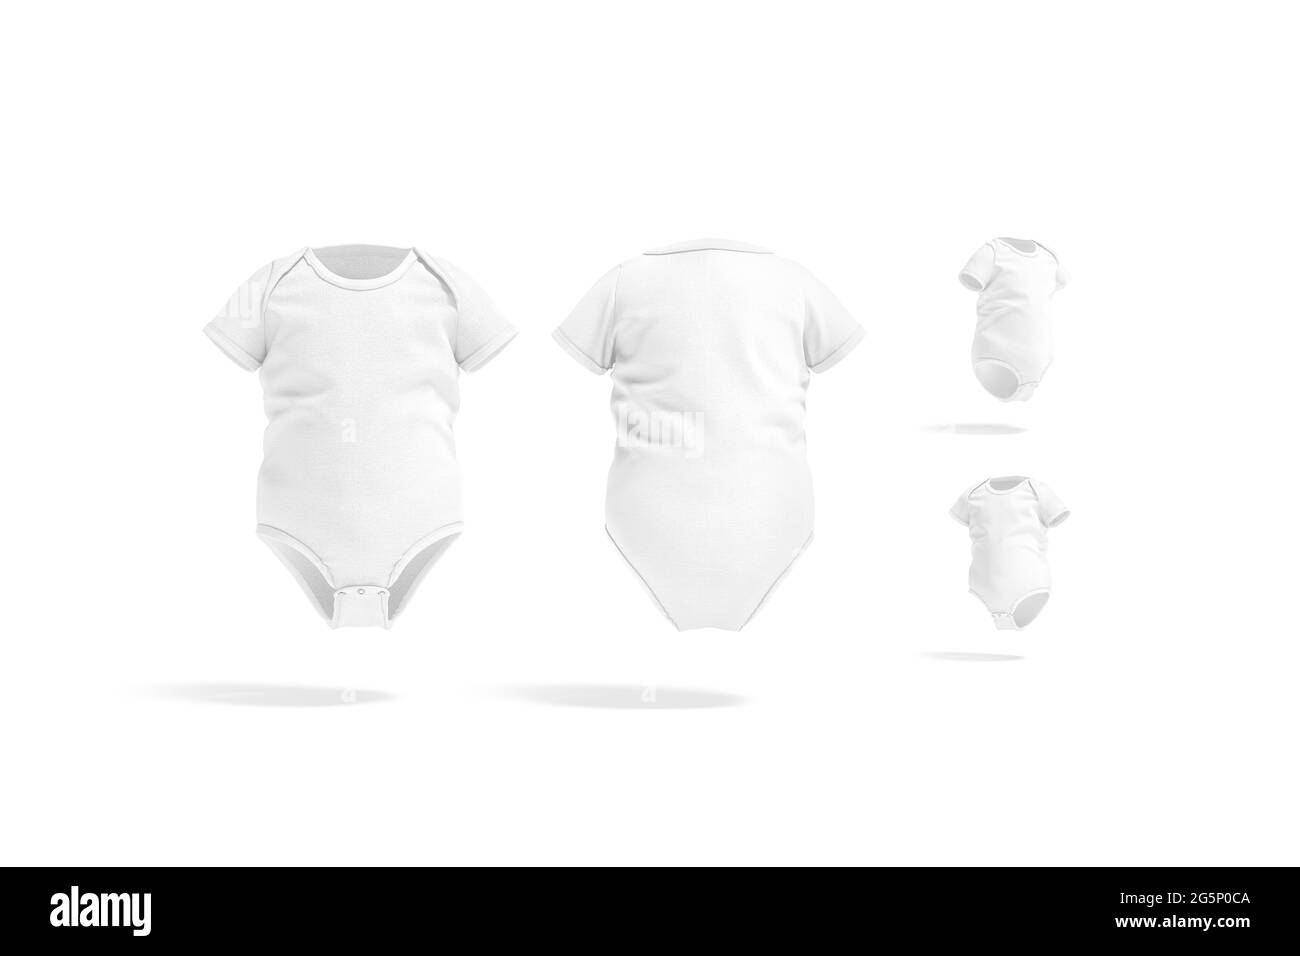 Weißer halbärmelige Babybody, Mockup, verschiedene Ansichten Stockfoto